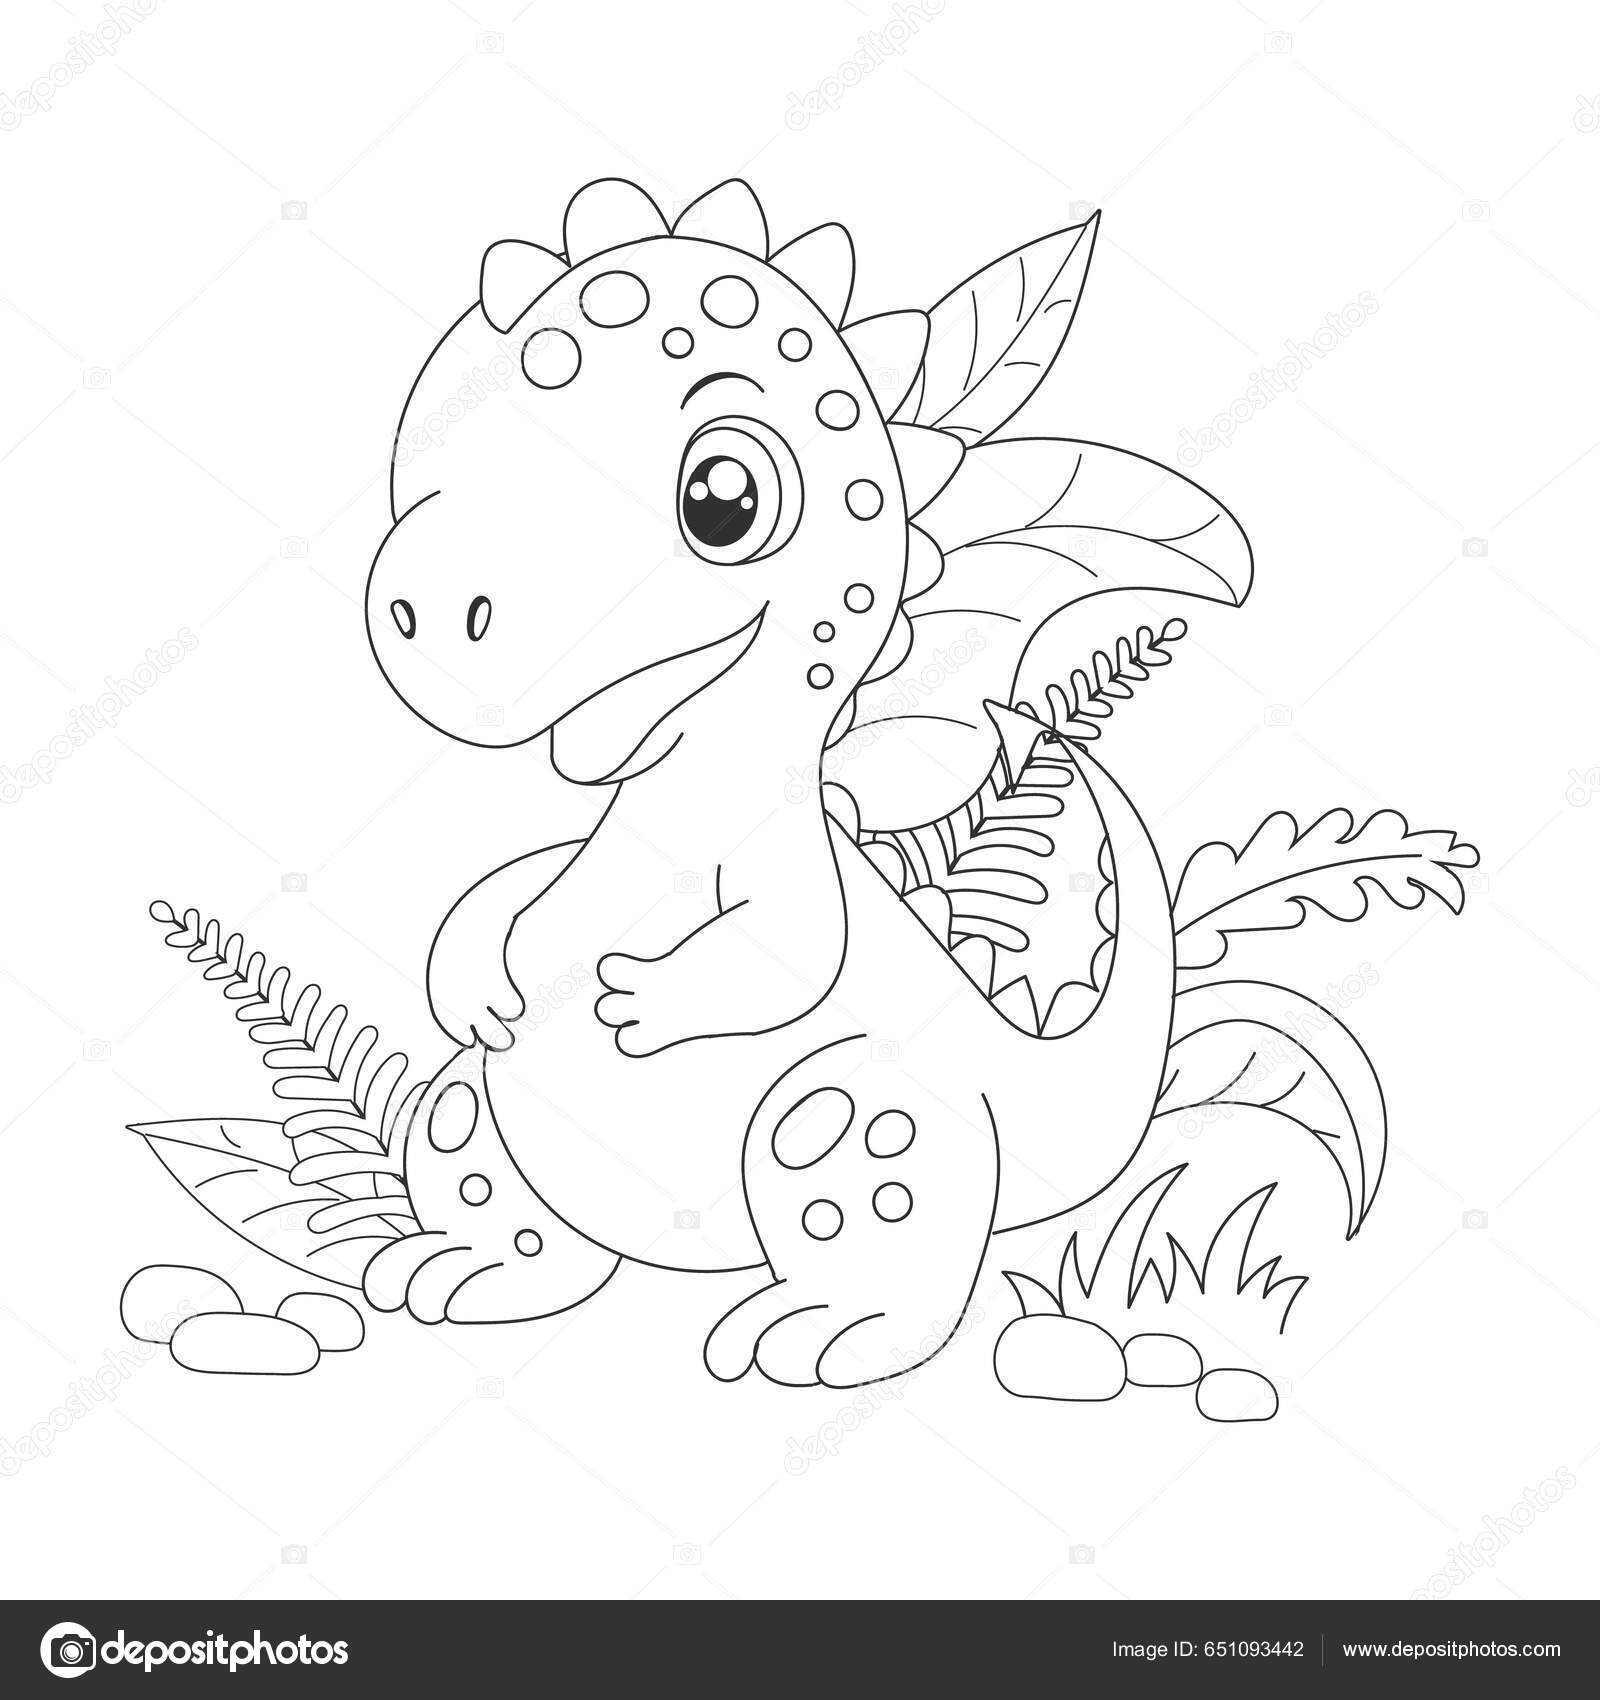 Como desenhar como desenhar um dinossauro com sua mão 